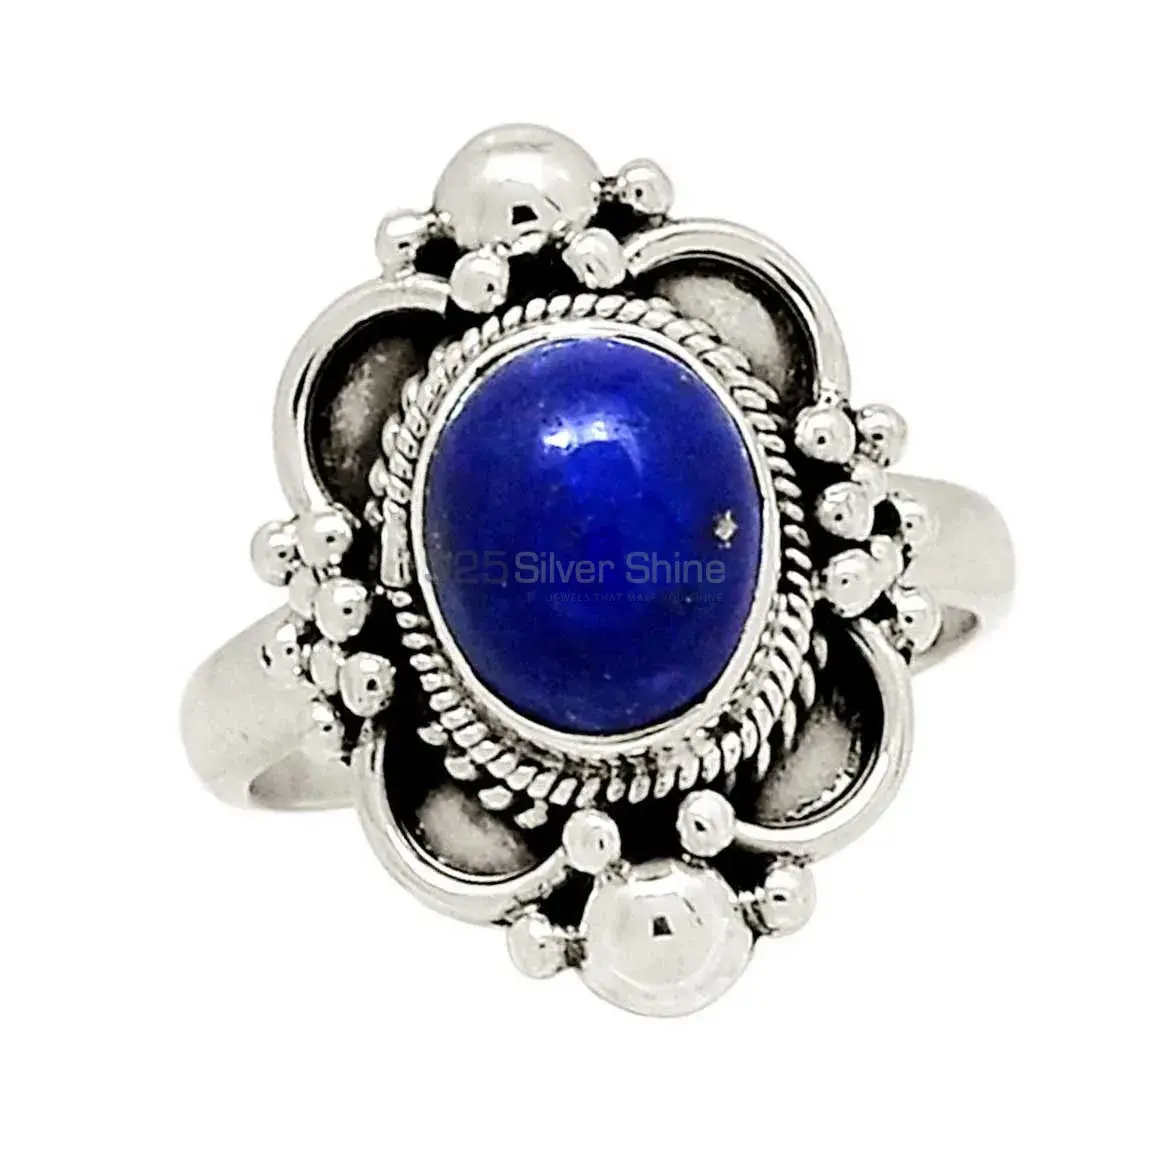 Designer Lapis Semi Precious Stone Ring In 925 Silver Jewelry 925SR2320_0